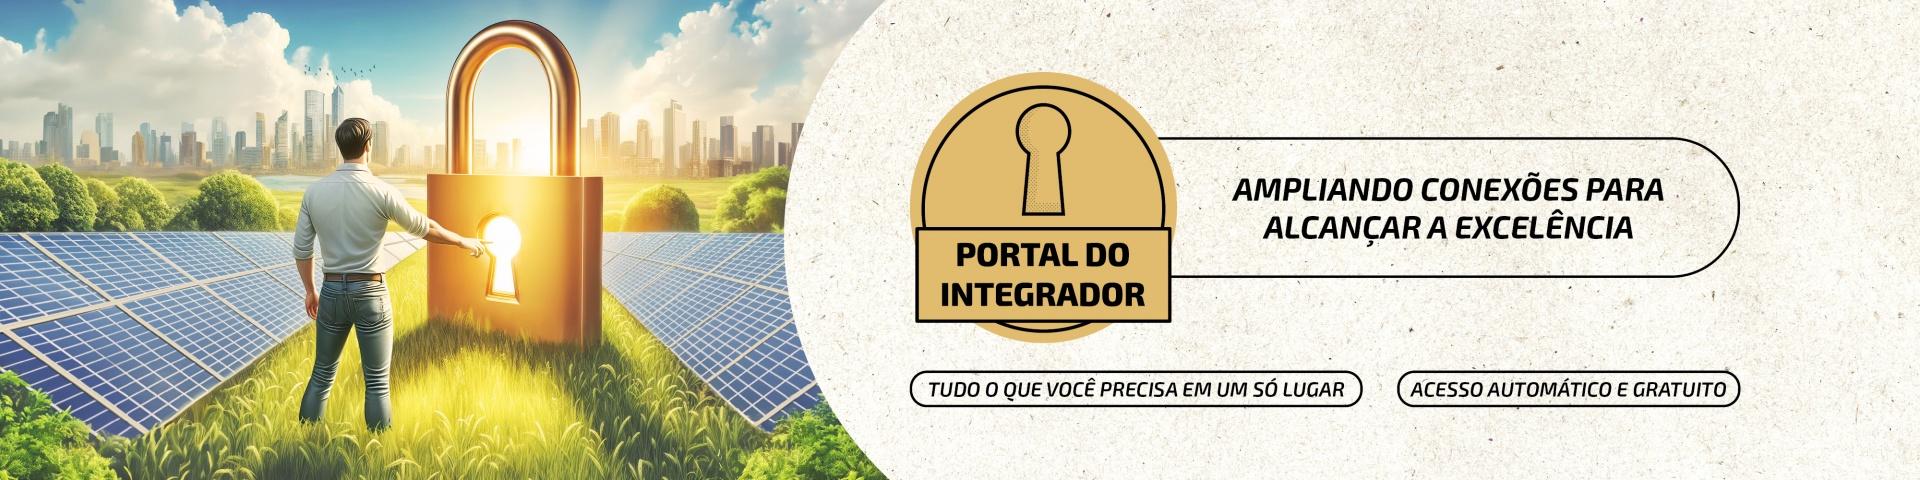 Banner Portal do Integrador